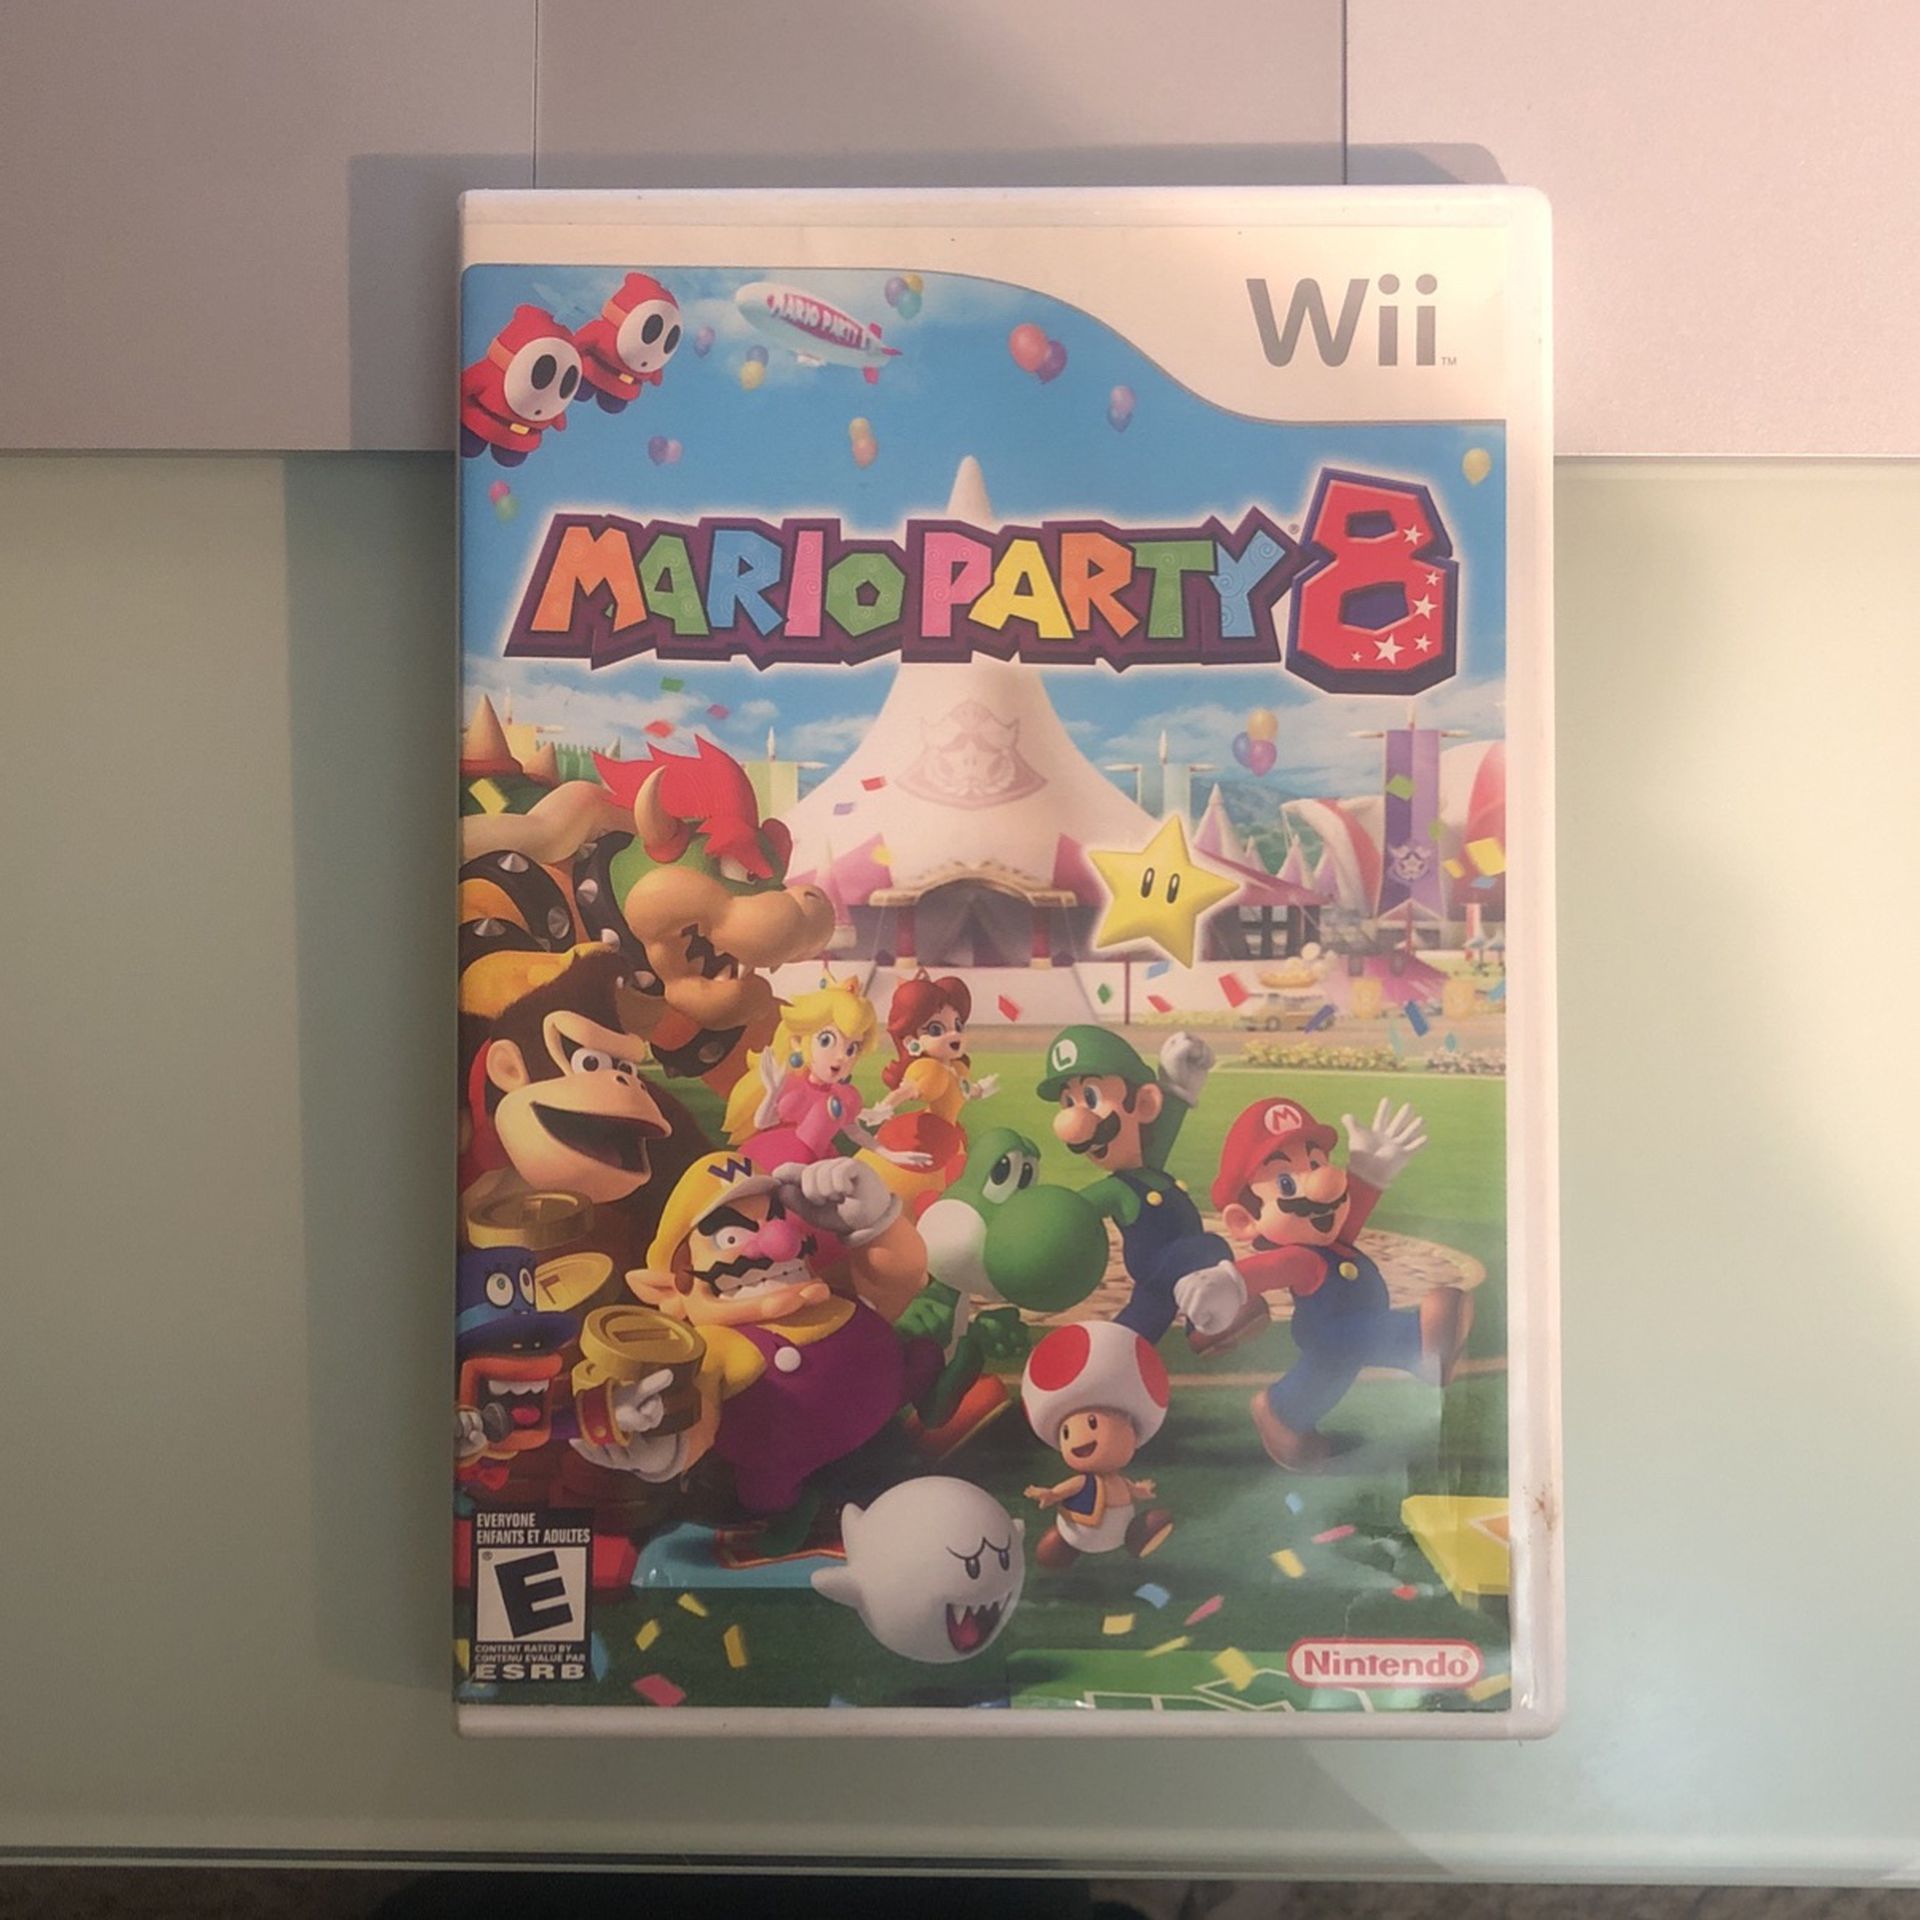 Wii Mario party 8